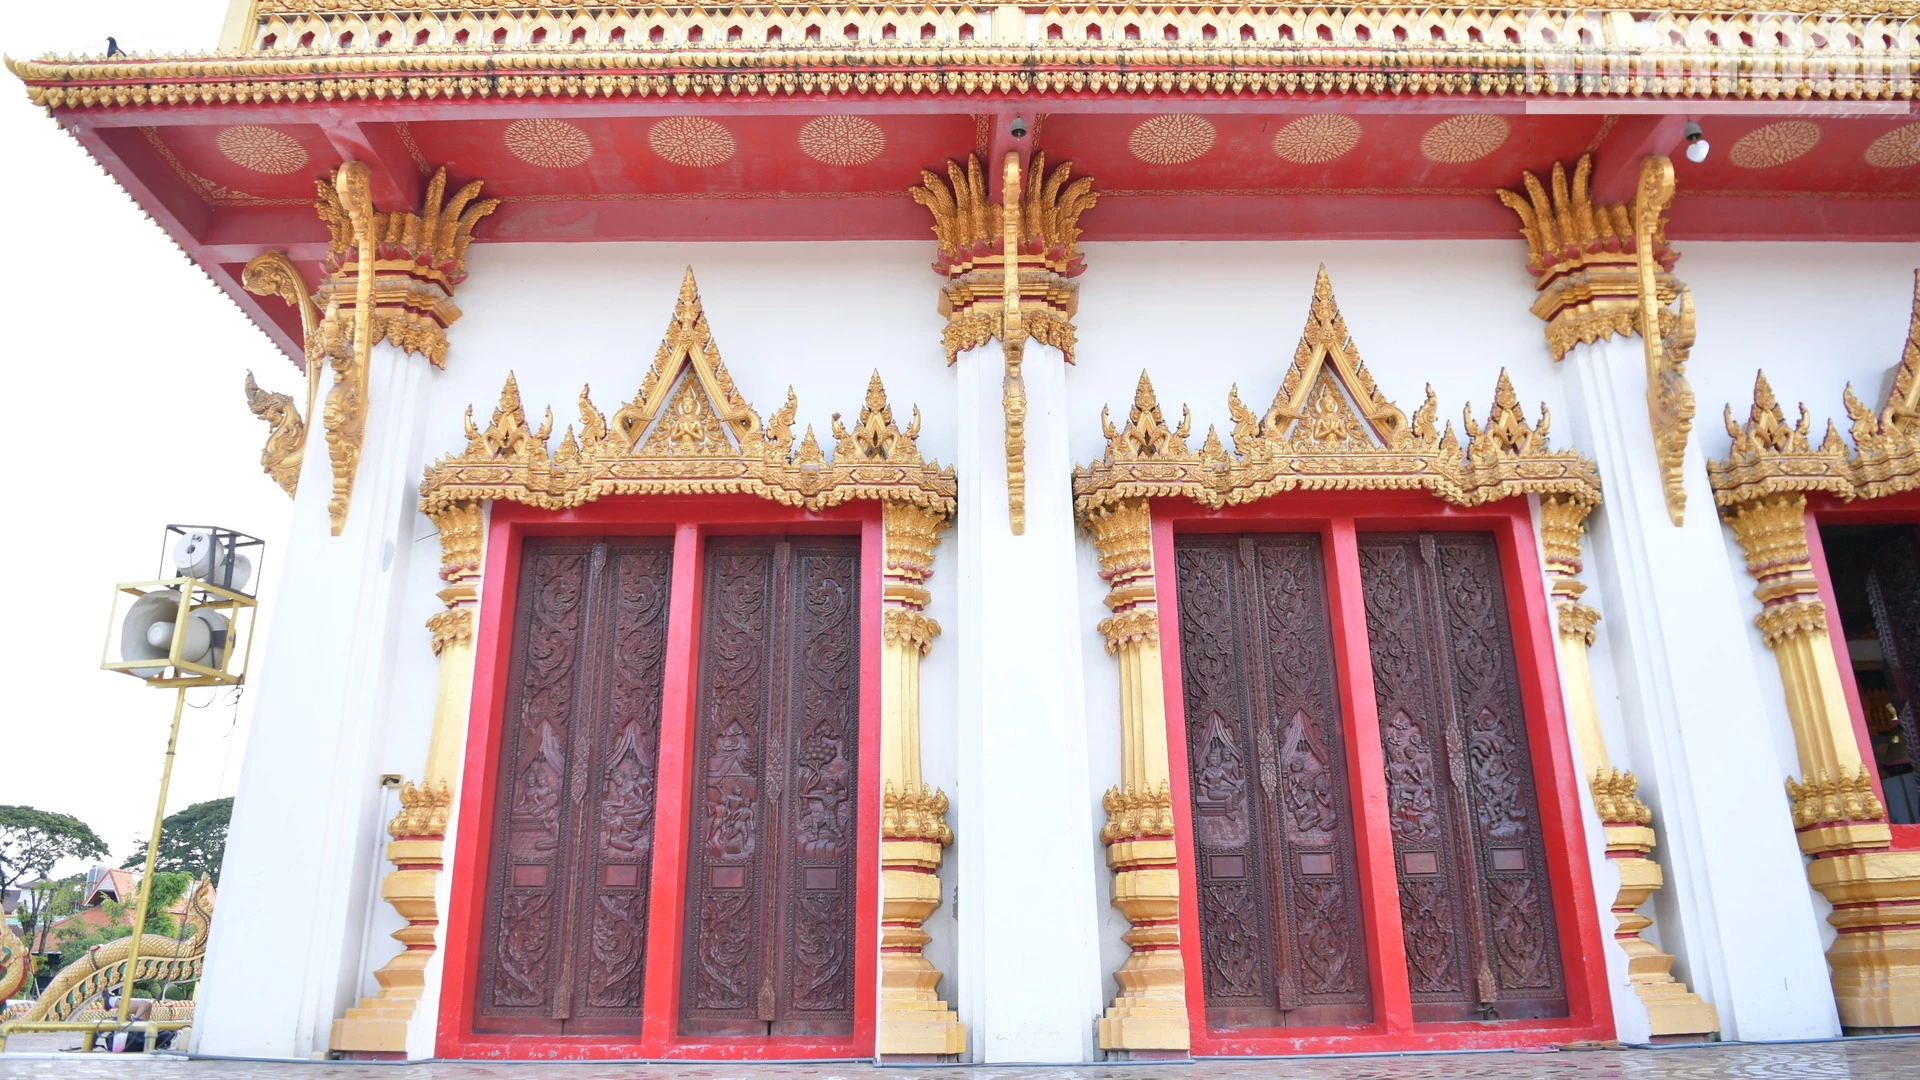 [Ảnh] Nét kiến trúc độc đáo của Bảo tháp chín tầng tại Khon Kaen, Thái Lan ảnh 1